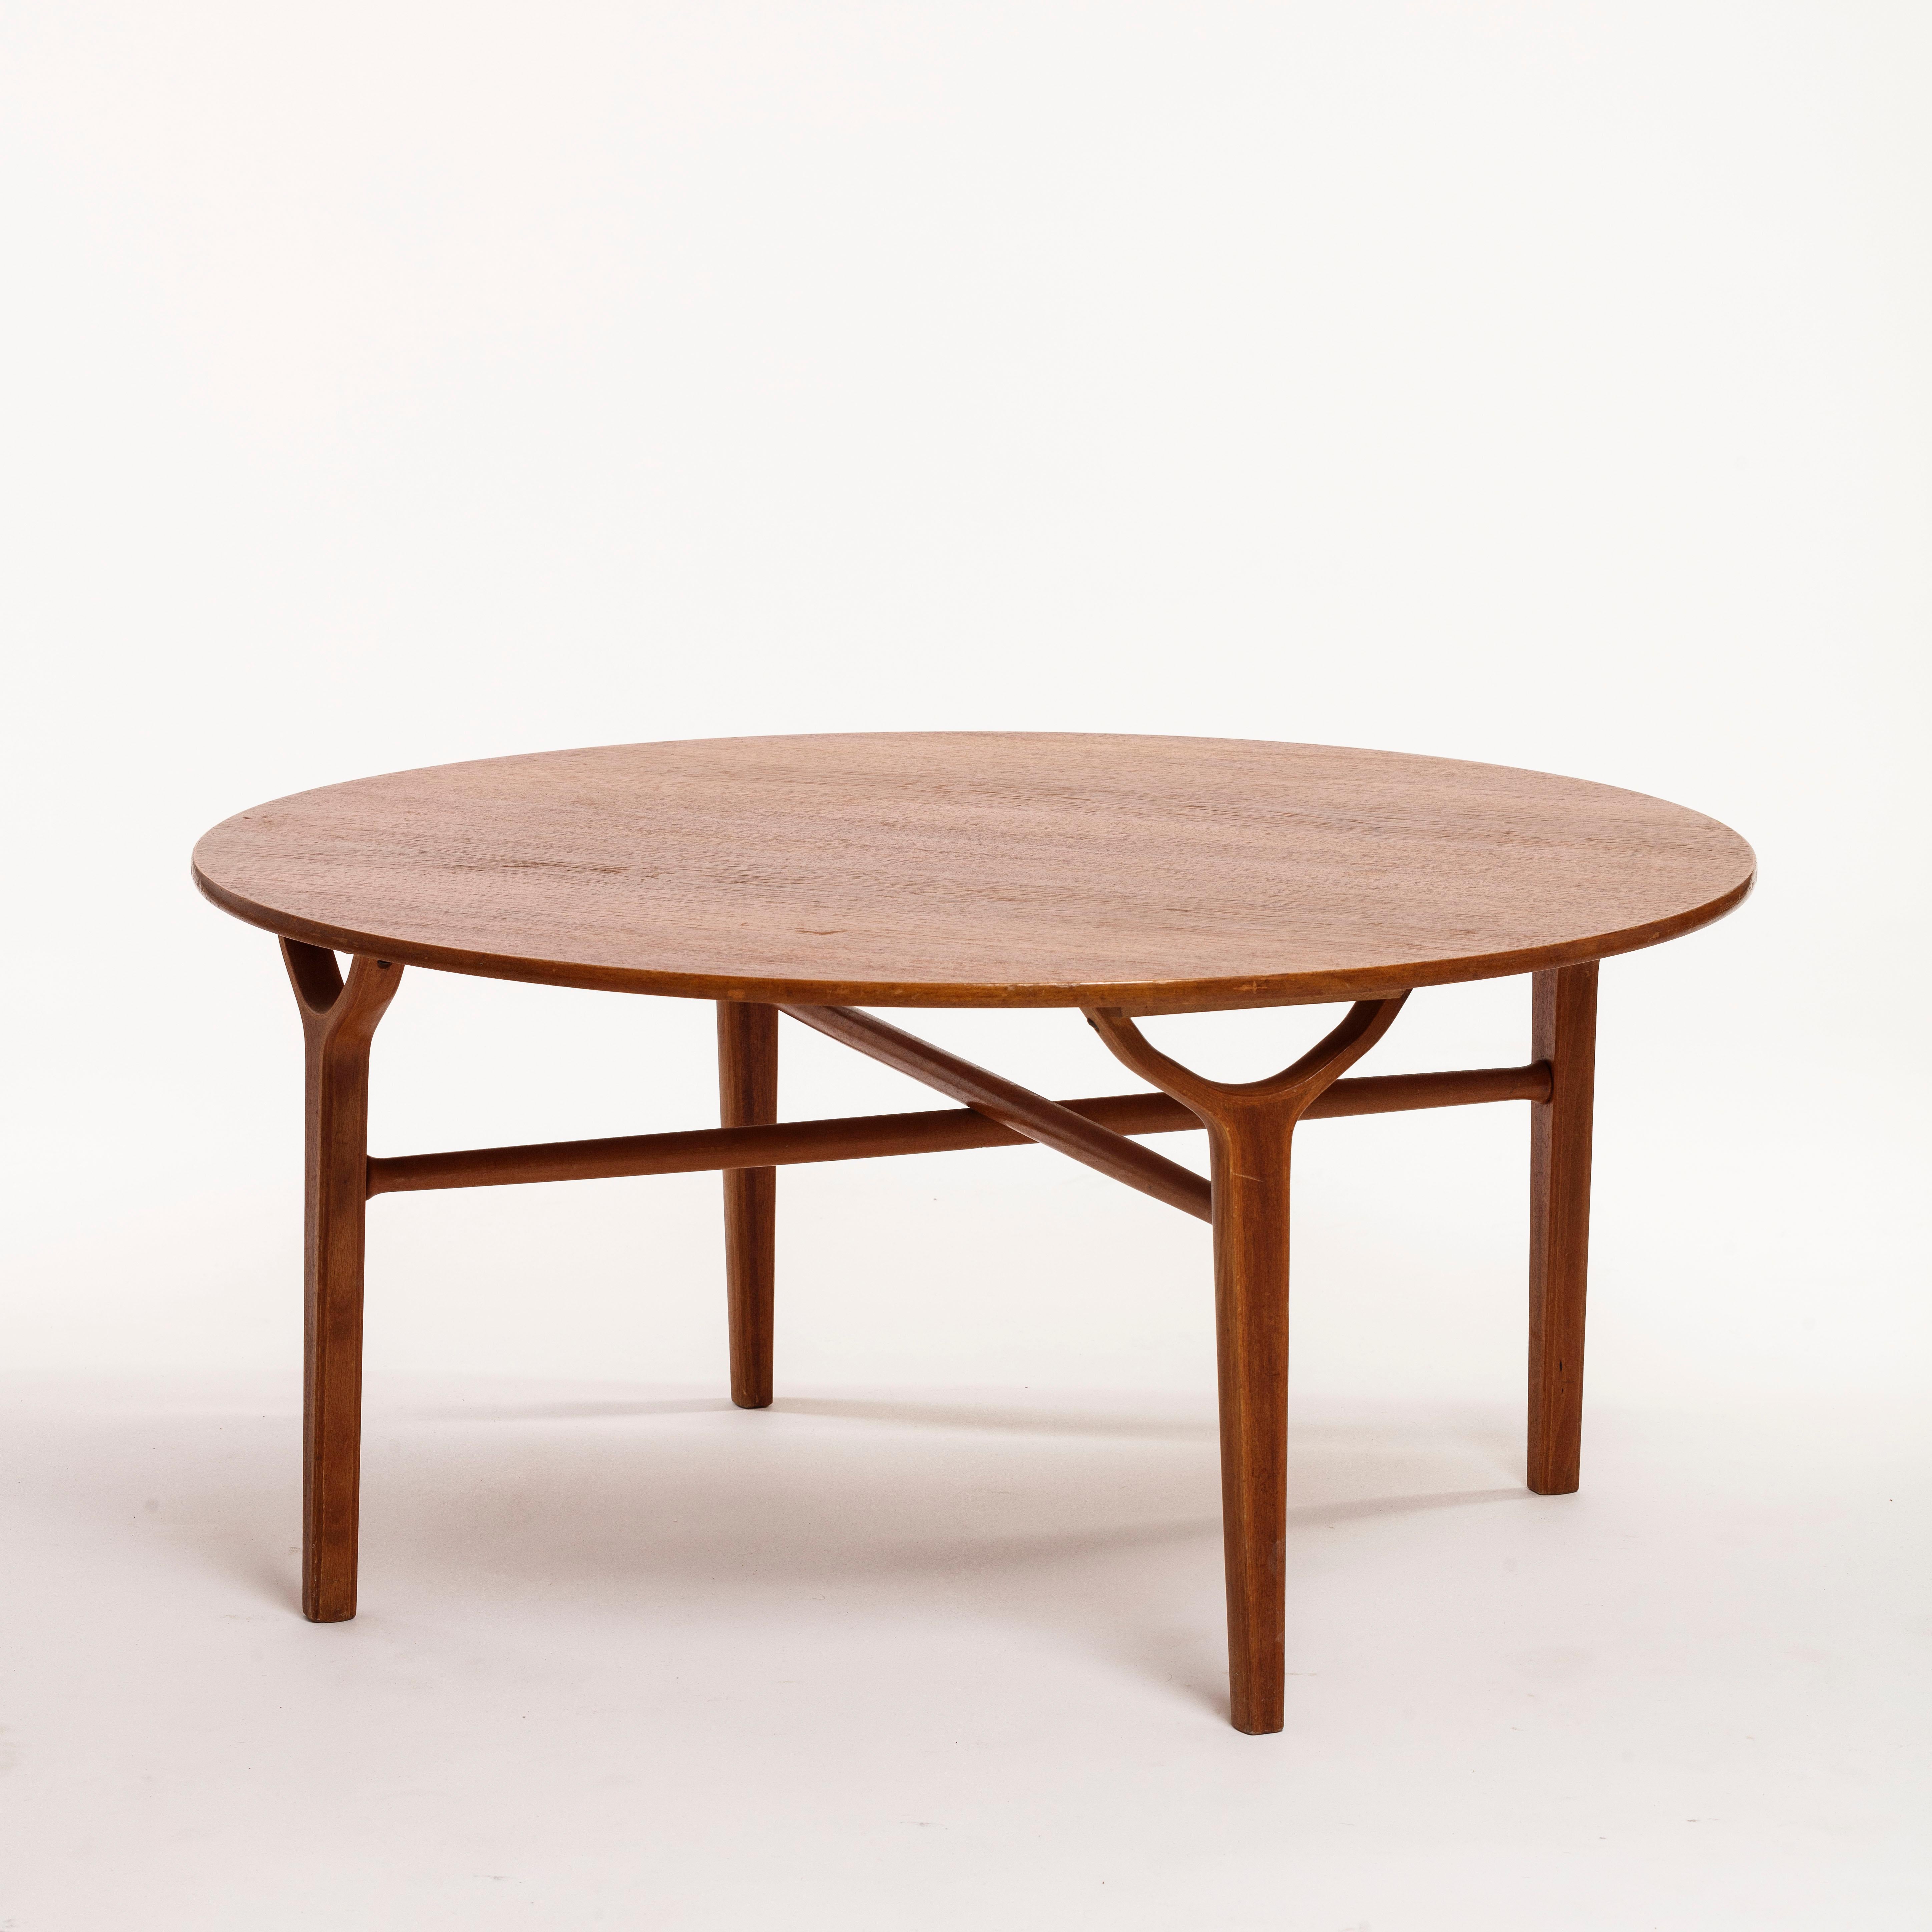 Peter Hvidt (1916-1986) Architecte et designer de meubles danois, cofondateur de Hvidt & Mølgaard.
Rare table basse modèle 6900 / AX conçue par Peter Hvidt & Orla Mølgaard-Nielsen. Produit par Fritz Hansen au Danemark.